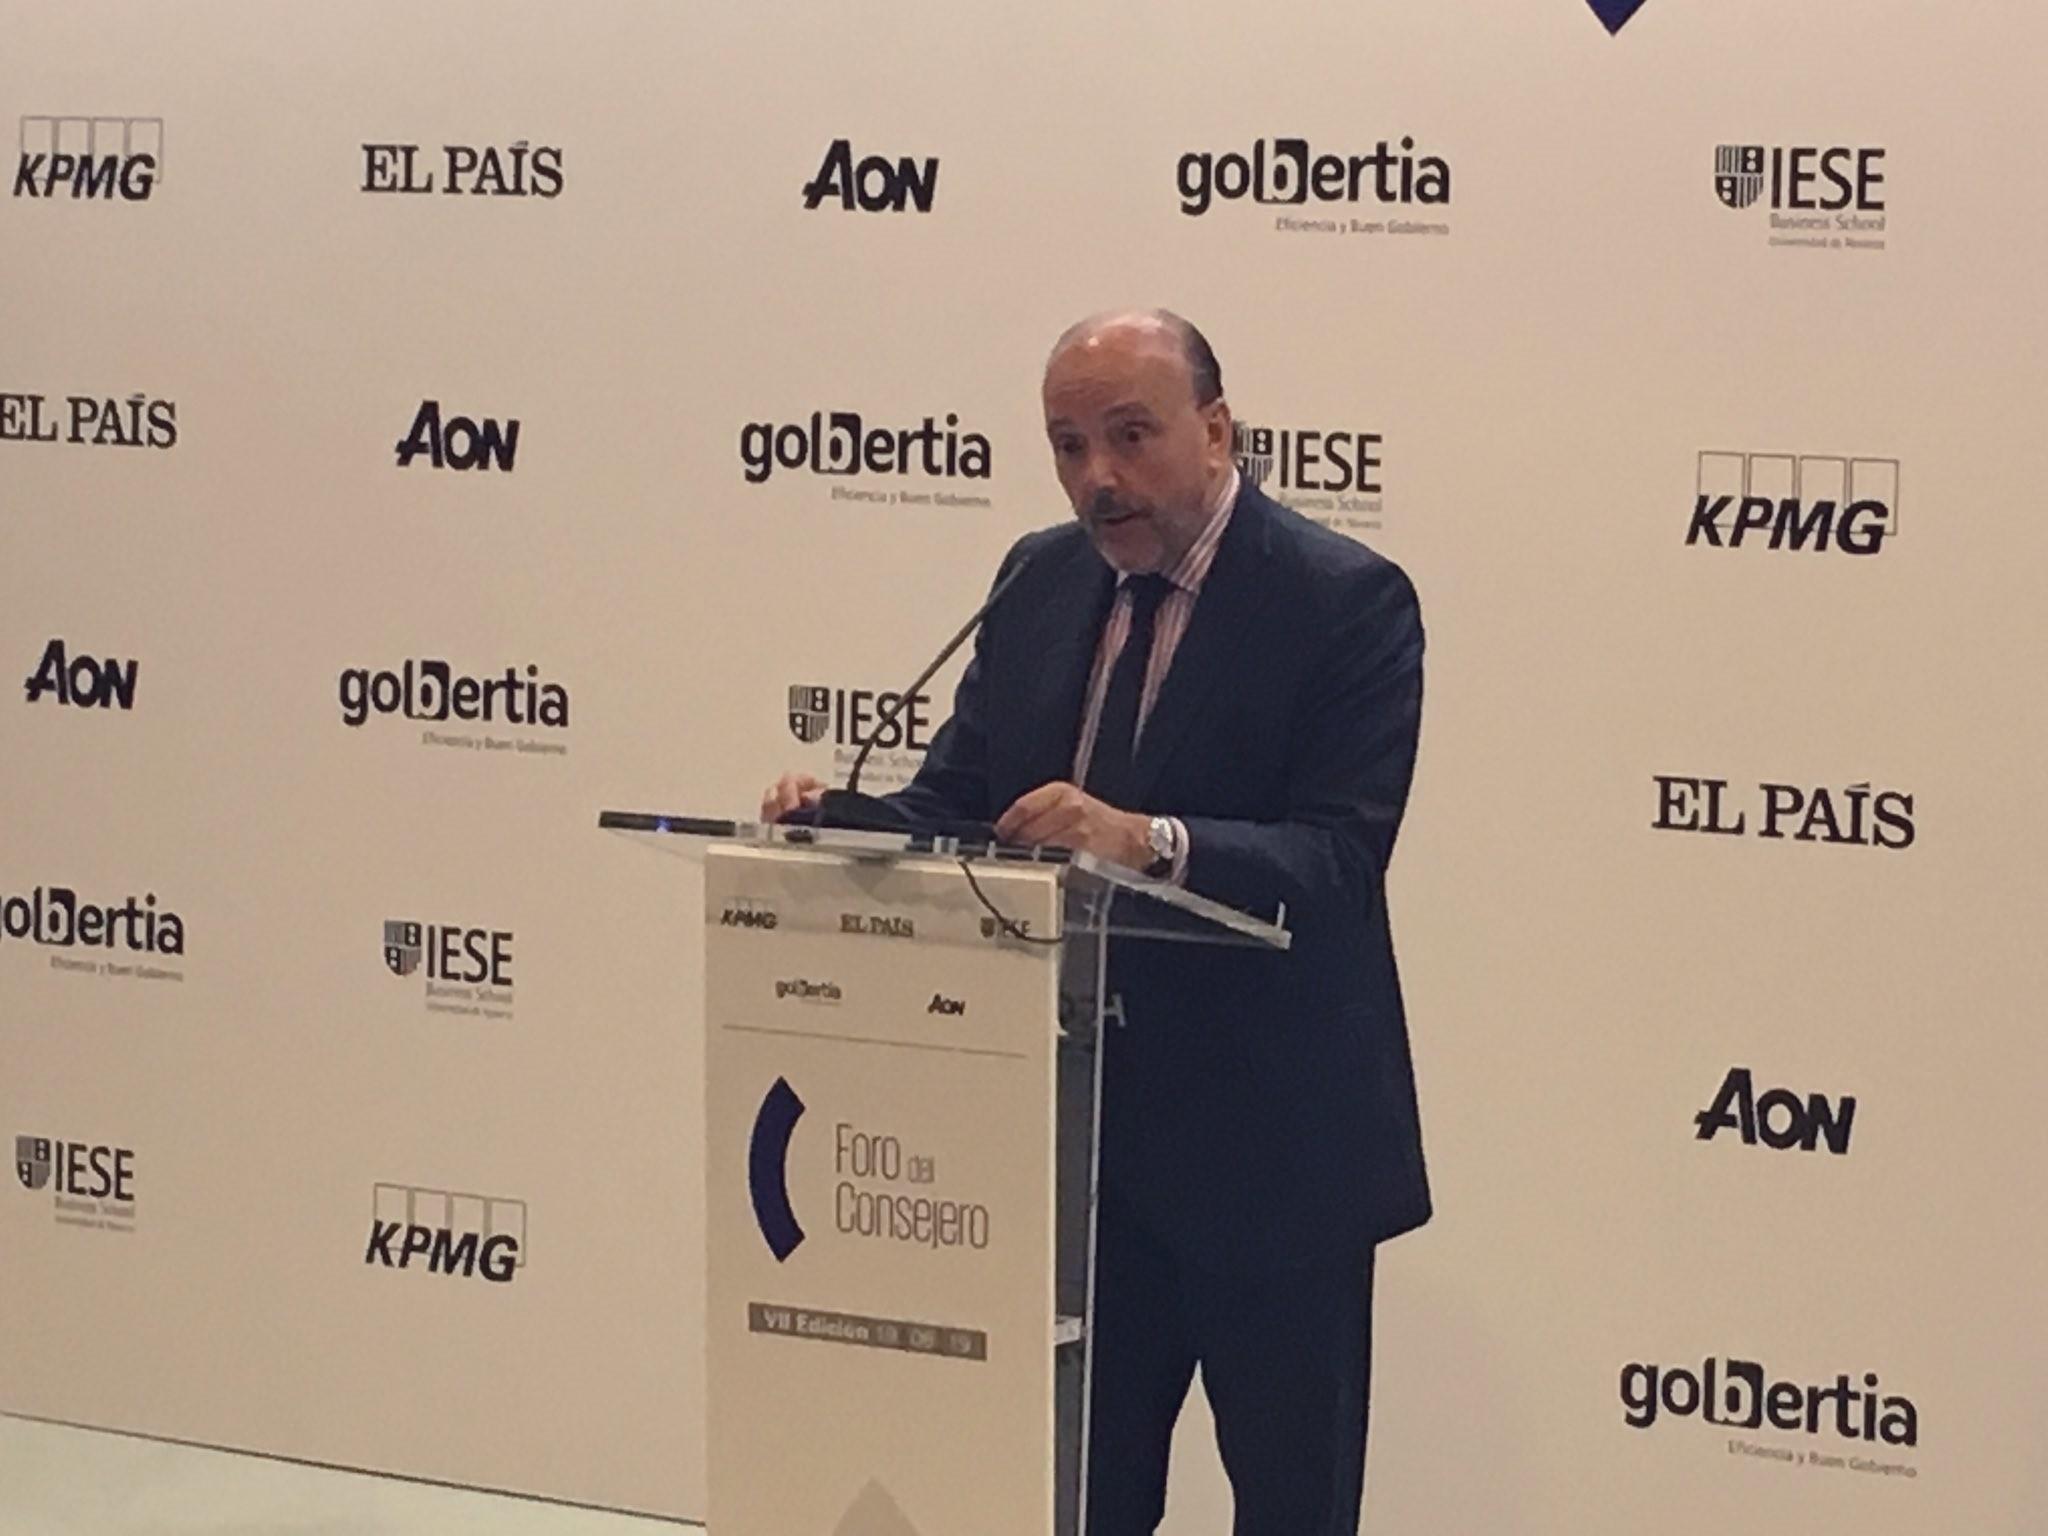 El presidente del Grupo Prisa Javier Monzón interviene en el VII Foro Anual del Consejero organizado por KPMG IESE y 'El País' 